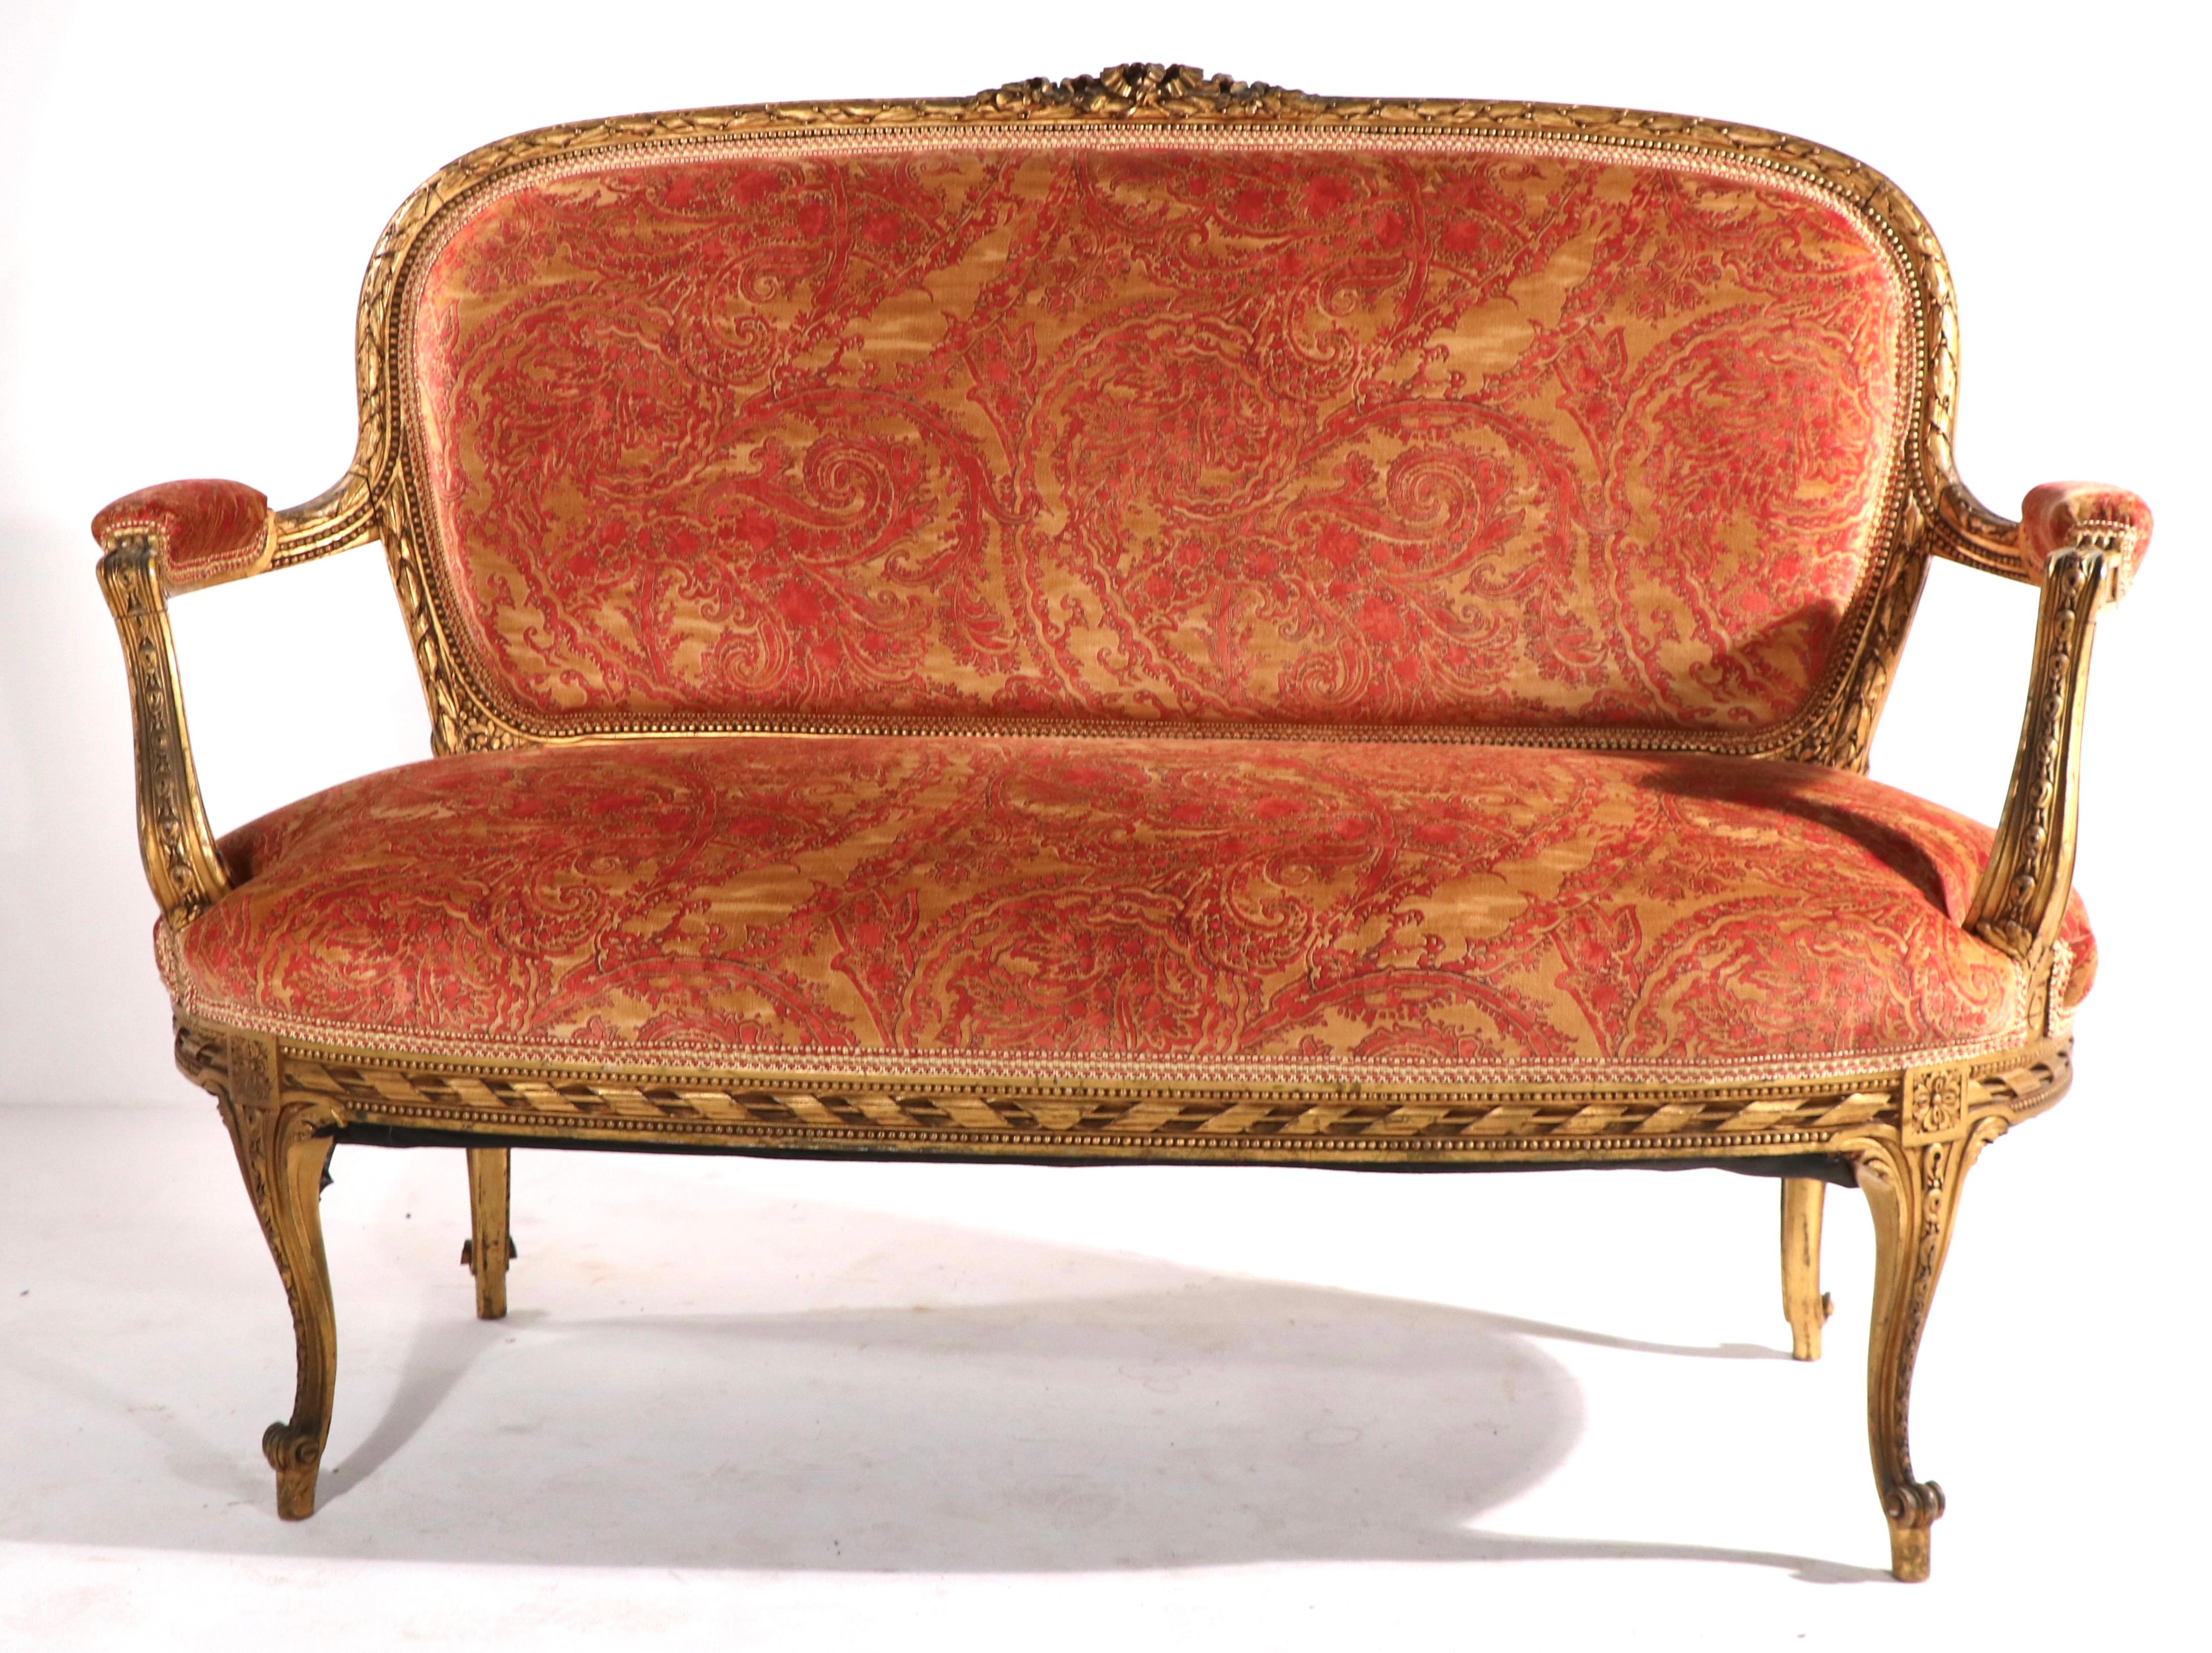 Exceptionnel canapé doré avec garniture en tissu de Fortuny. Nous pensons que le cadre est d'époque Louis XVI, mais nous ne sommes pas des experts de cette période. Cet exemplaire est en excellent état, propre et prêt à l'emploi. Elegant,